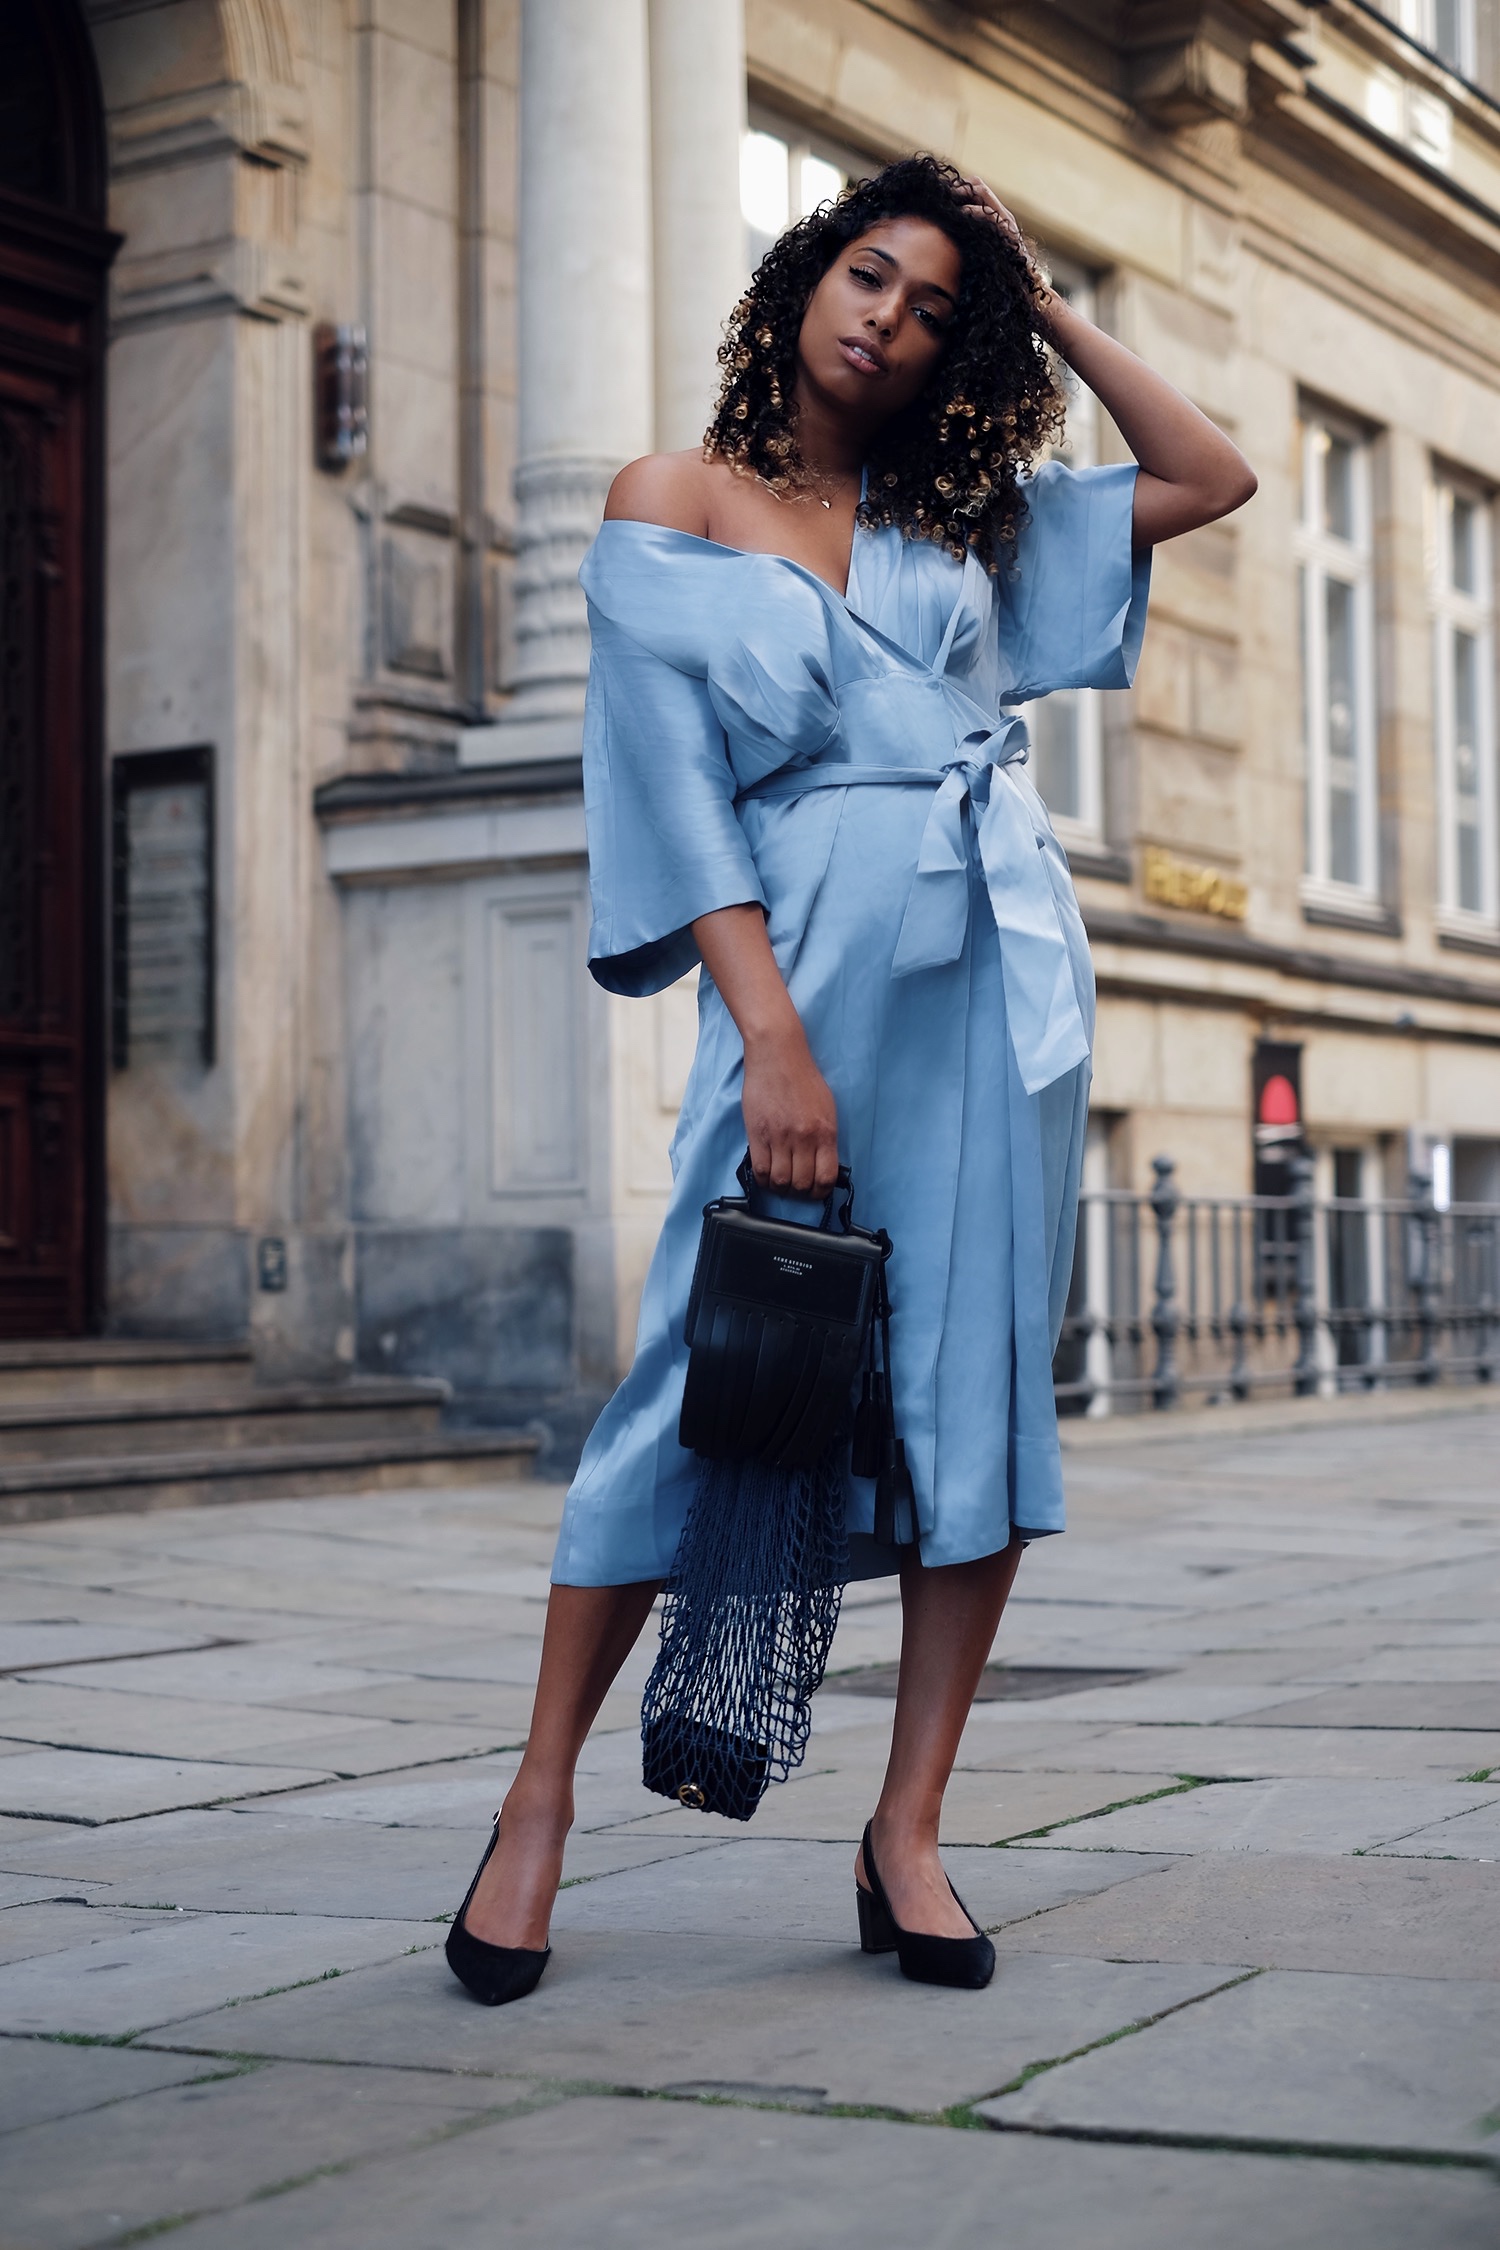 light blue dress, net bag and sling pump - late summer mix.